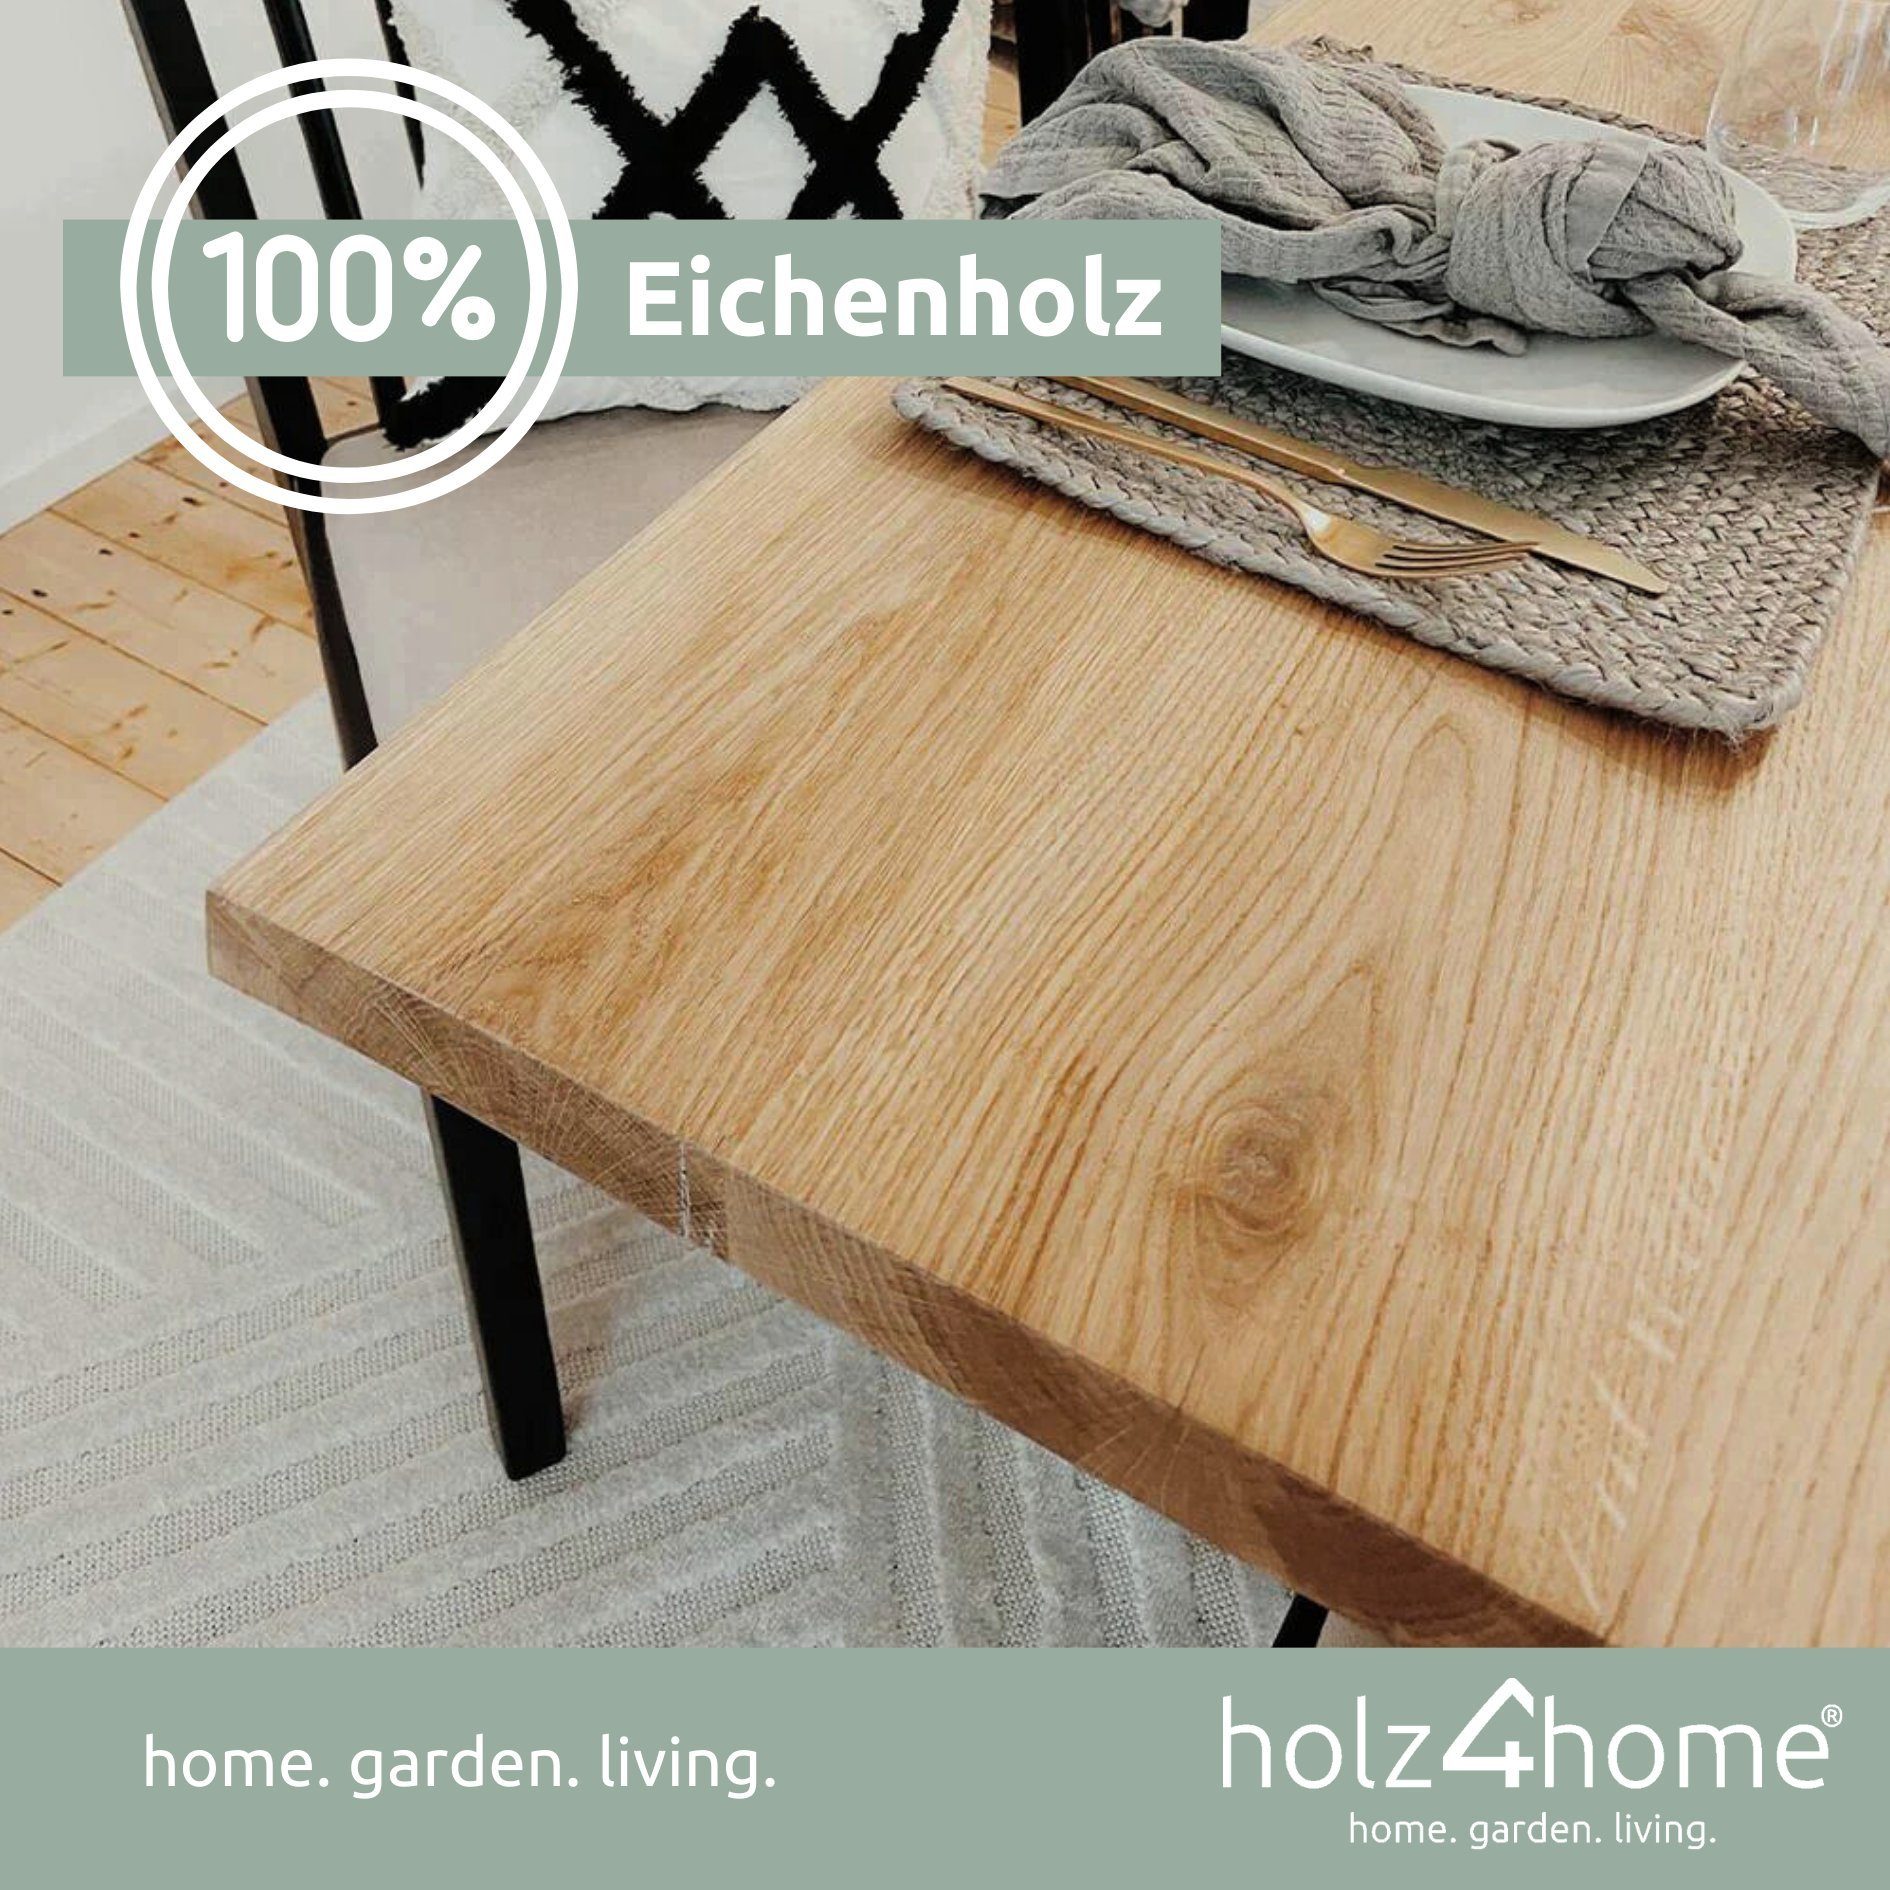 Tischplatte 220x100x4cm Eiche, Esstischplatte Esstischplatte LxBxH, holz4home Echtholz